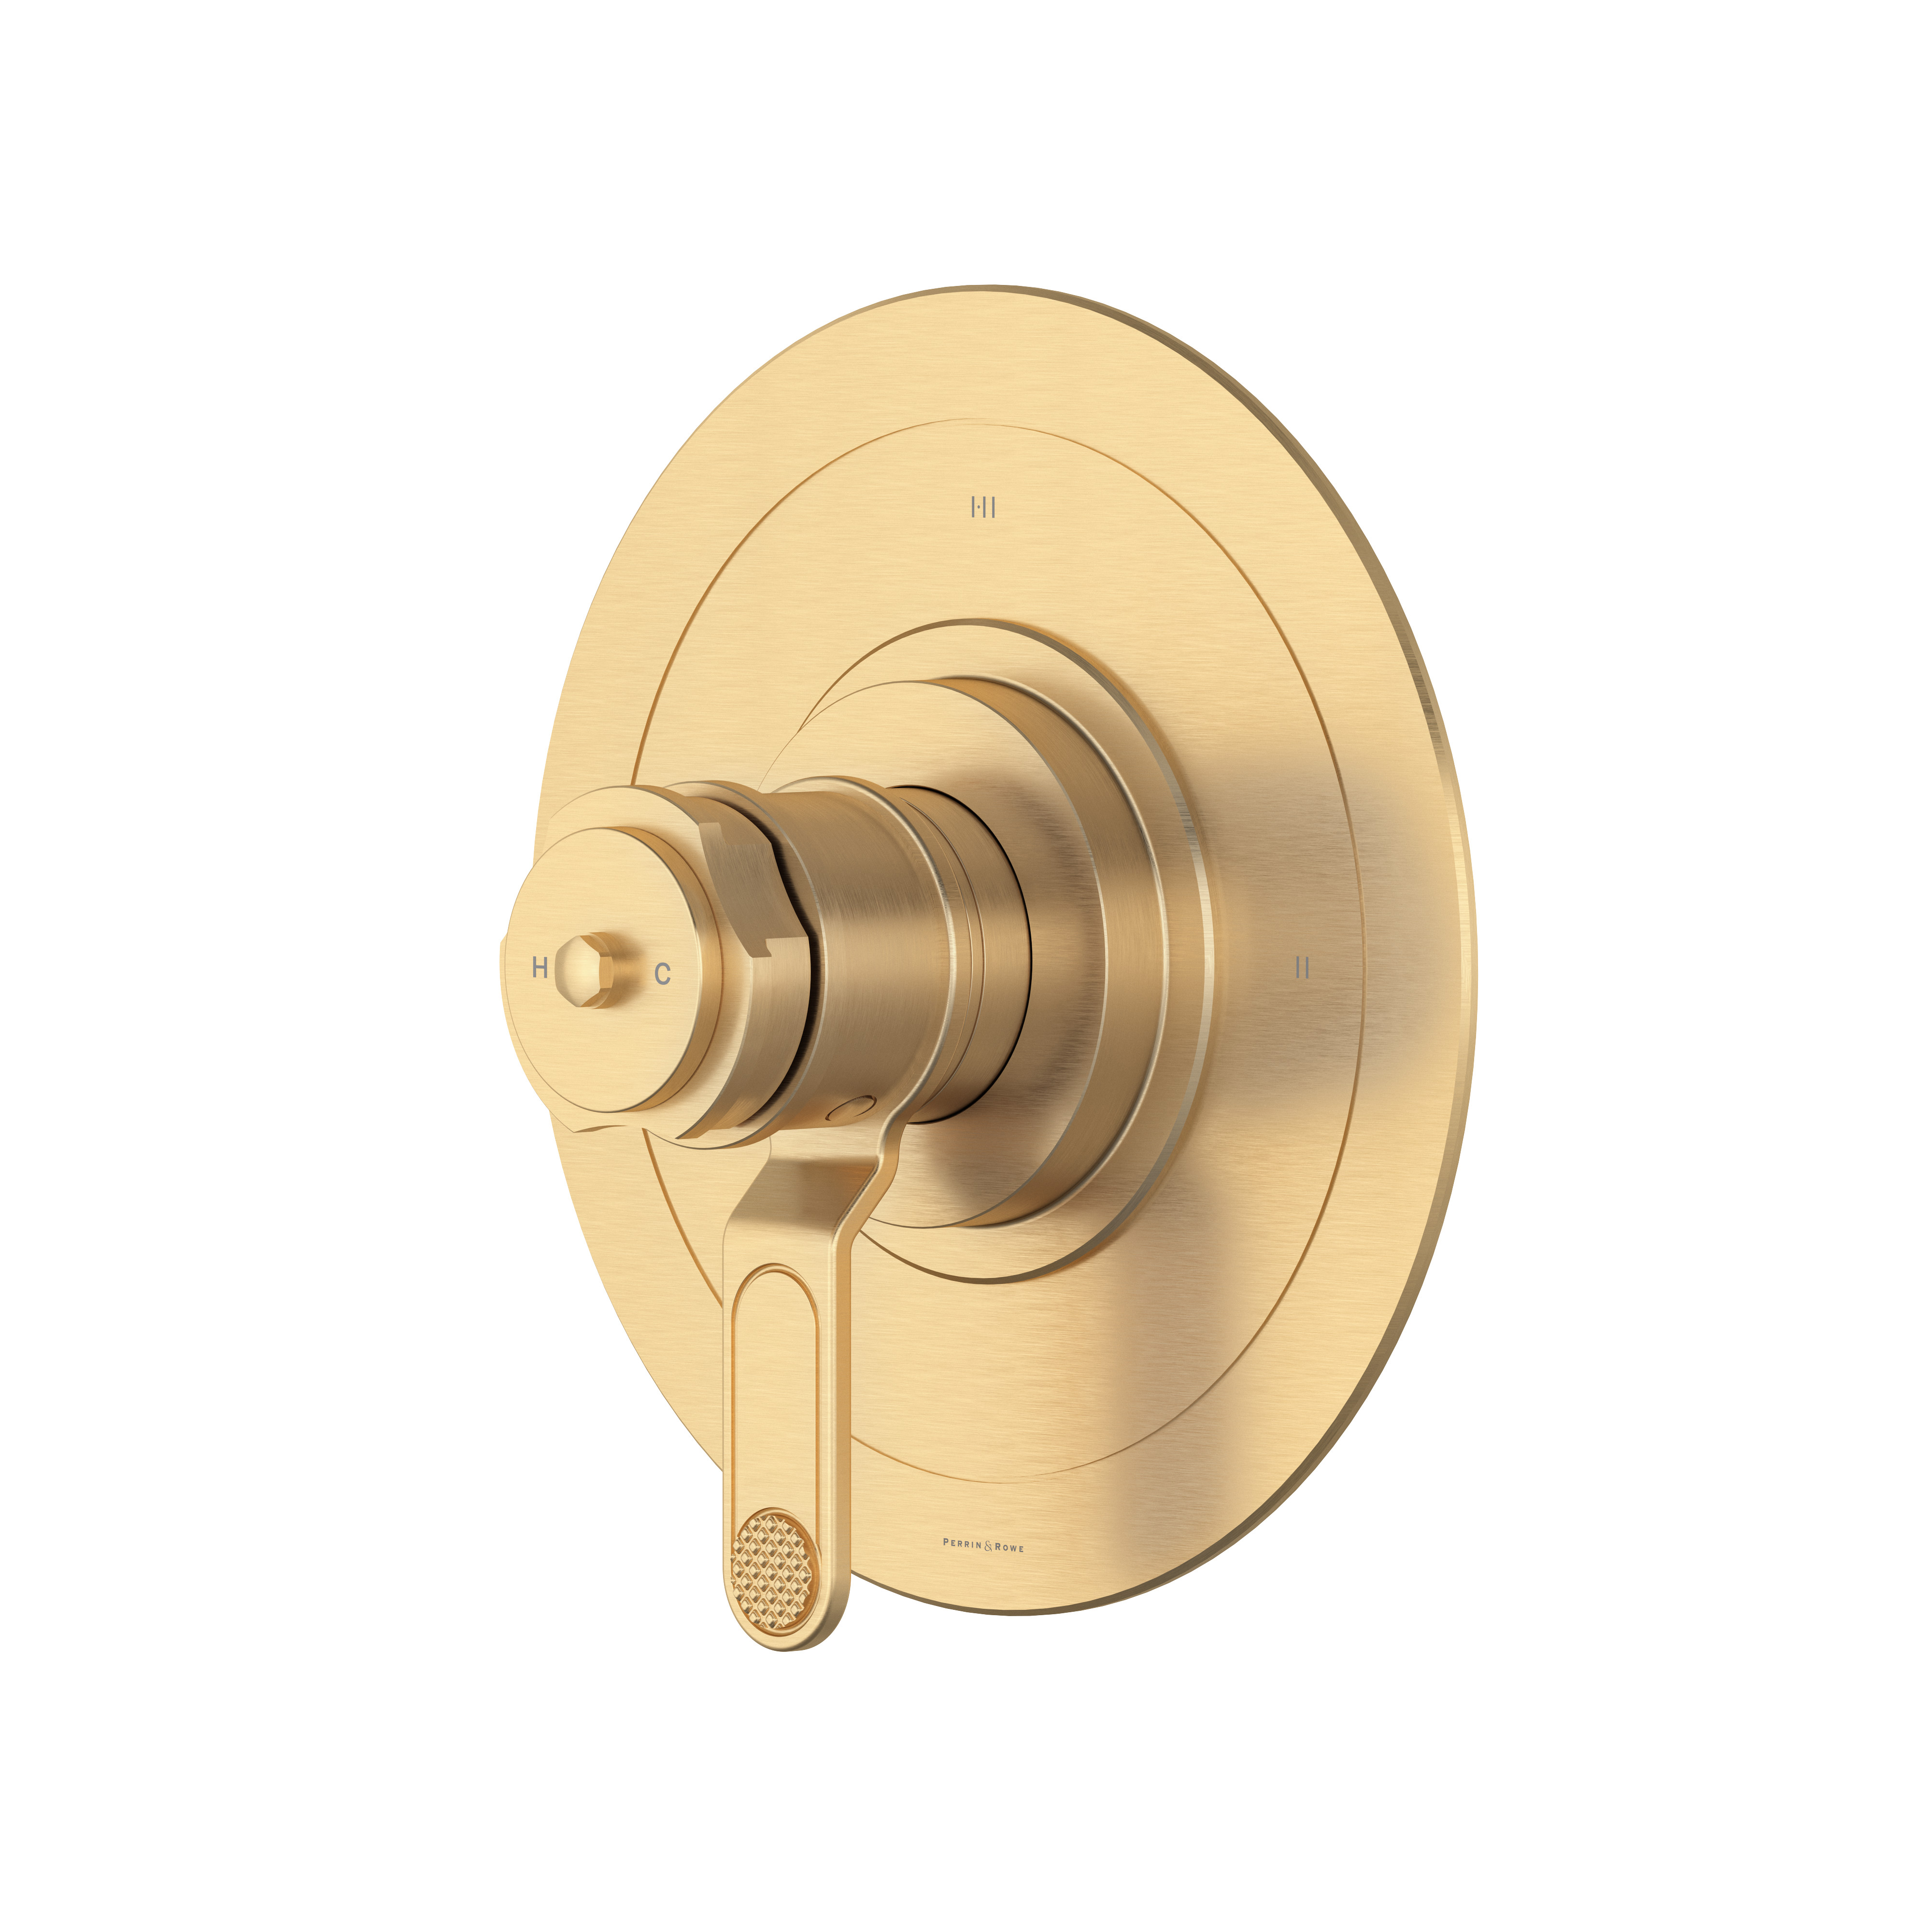 Garniture pour valve pression équilibrée et thermostatique de 1/2 po à 3 fonctions Armstrong - Or anglais satiné | Numéro de modèle: U.TAR23W1DWSEG